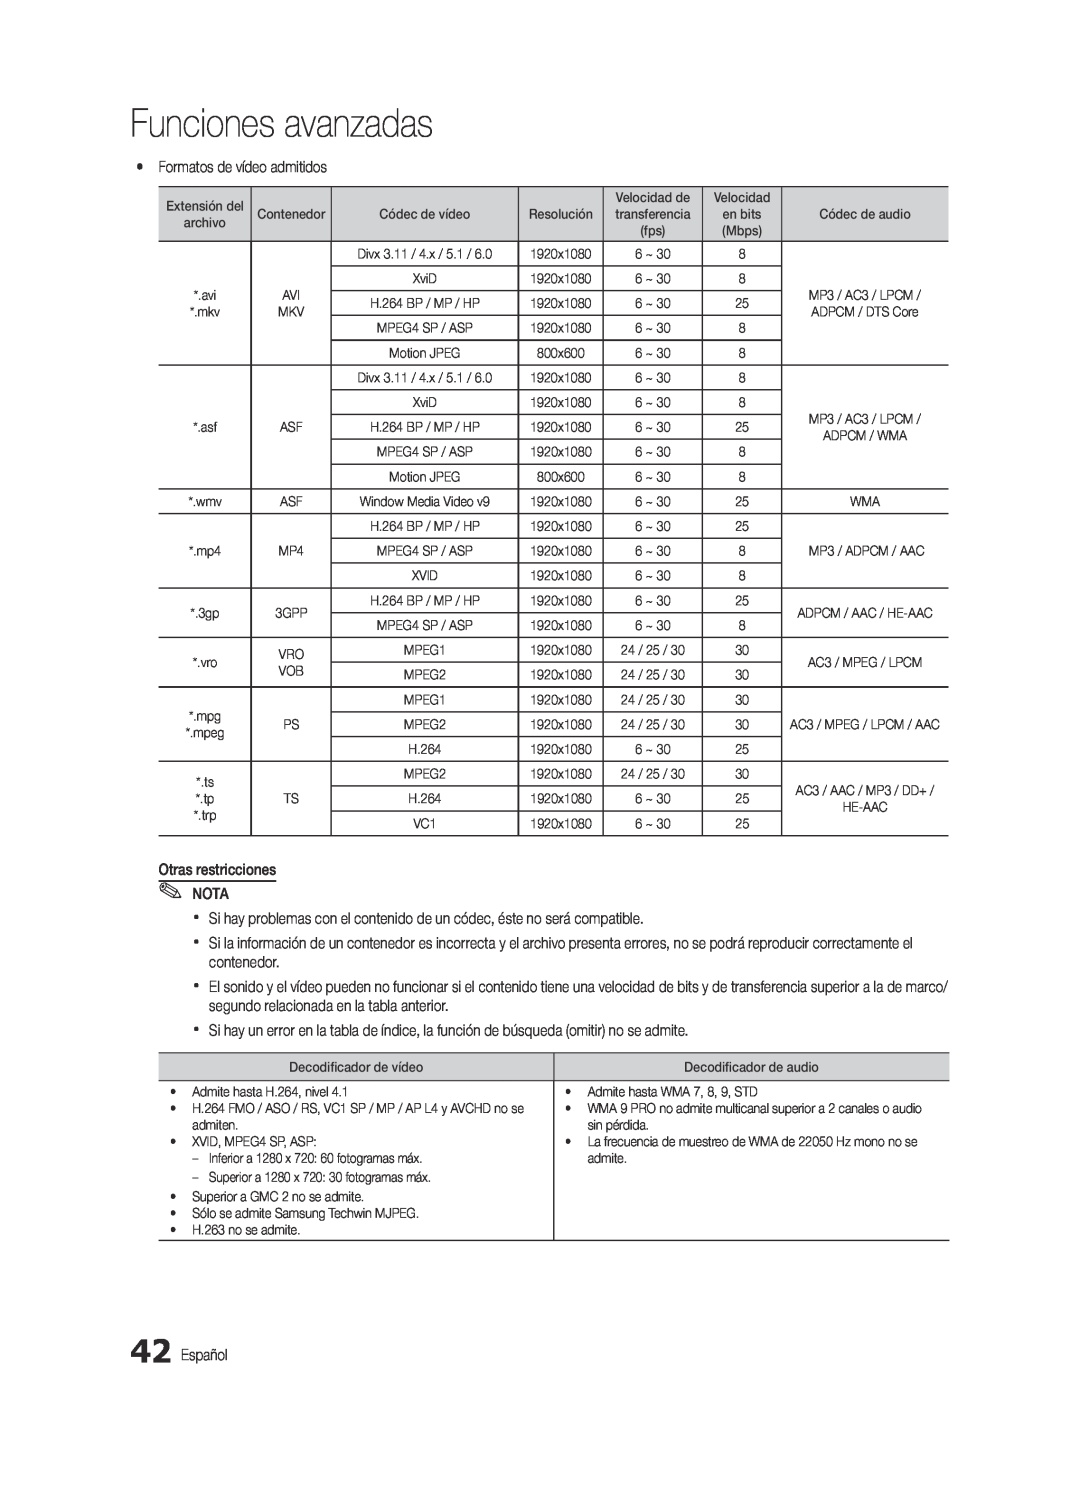 Samsung BN68-03088A-01, Series C9 user manual Funciones avanzadas, yy Formatos de vídeo admitidos 